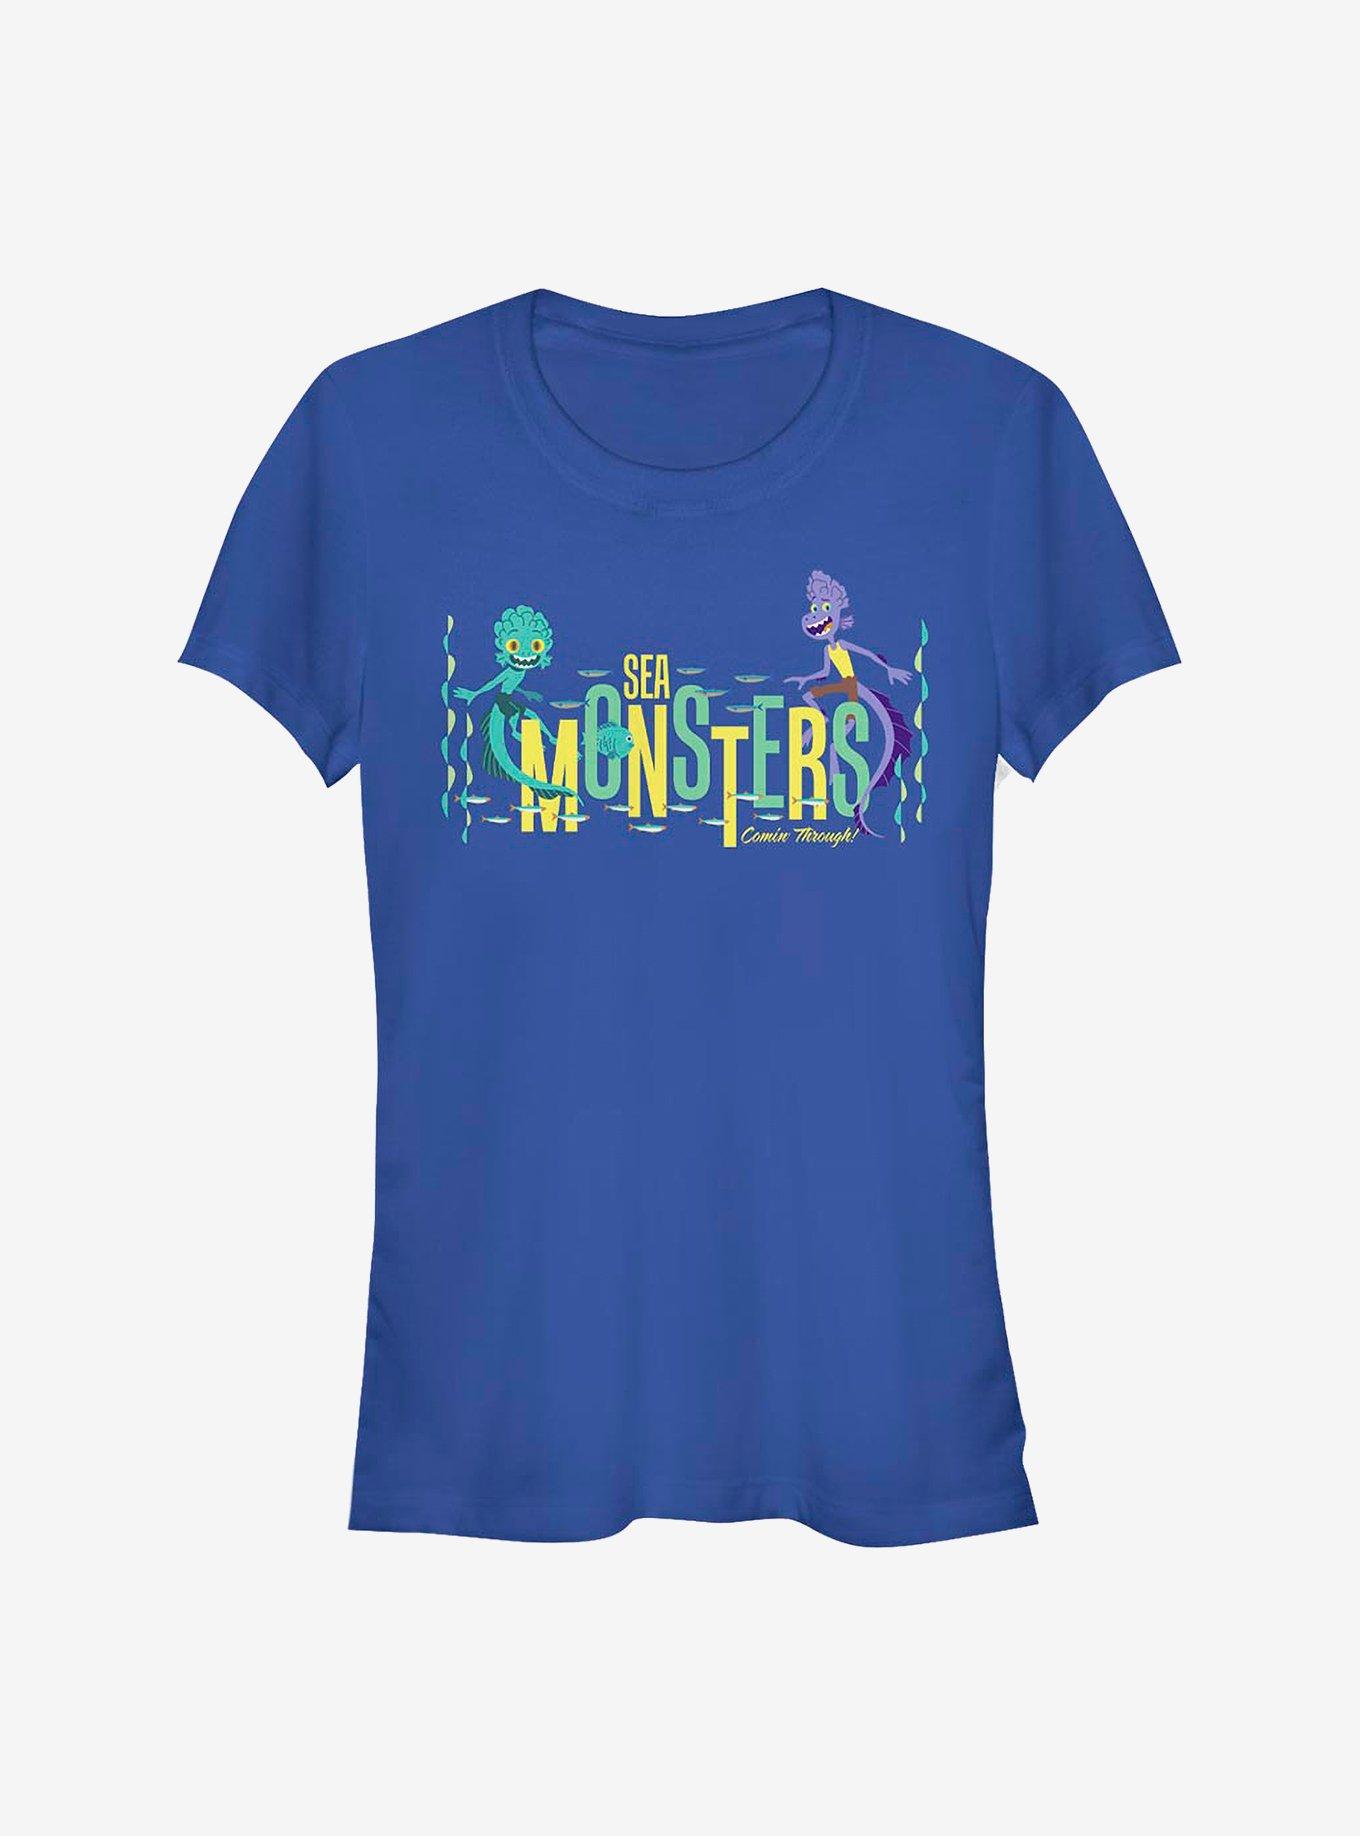 Disney Pixar Luca Sea Monsters Coming Through Girls T-Shirt, ROYAL, hi-res